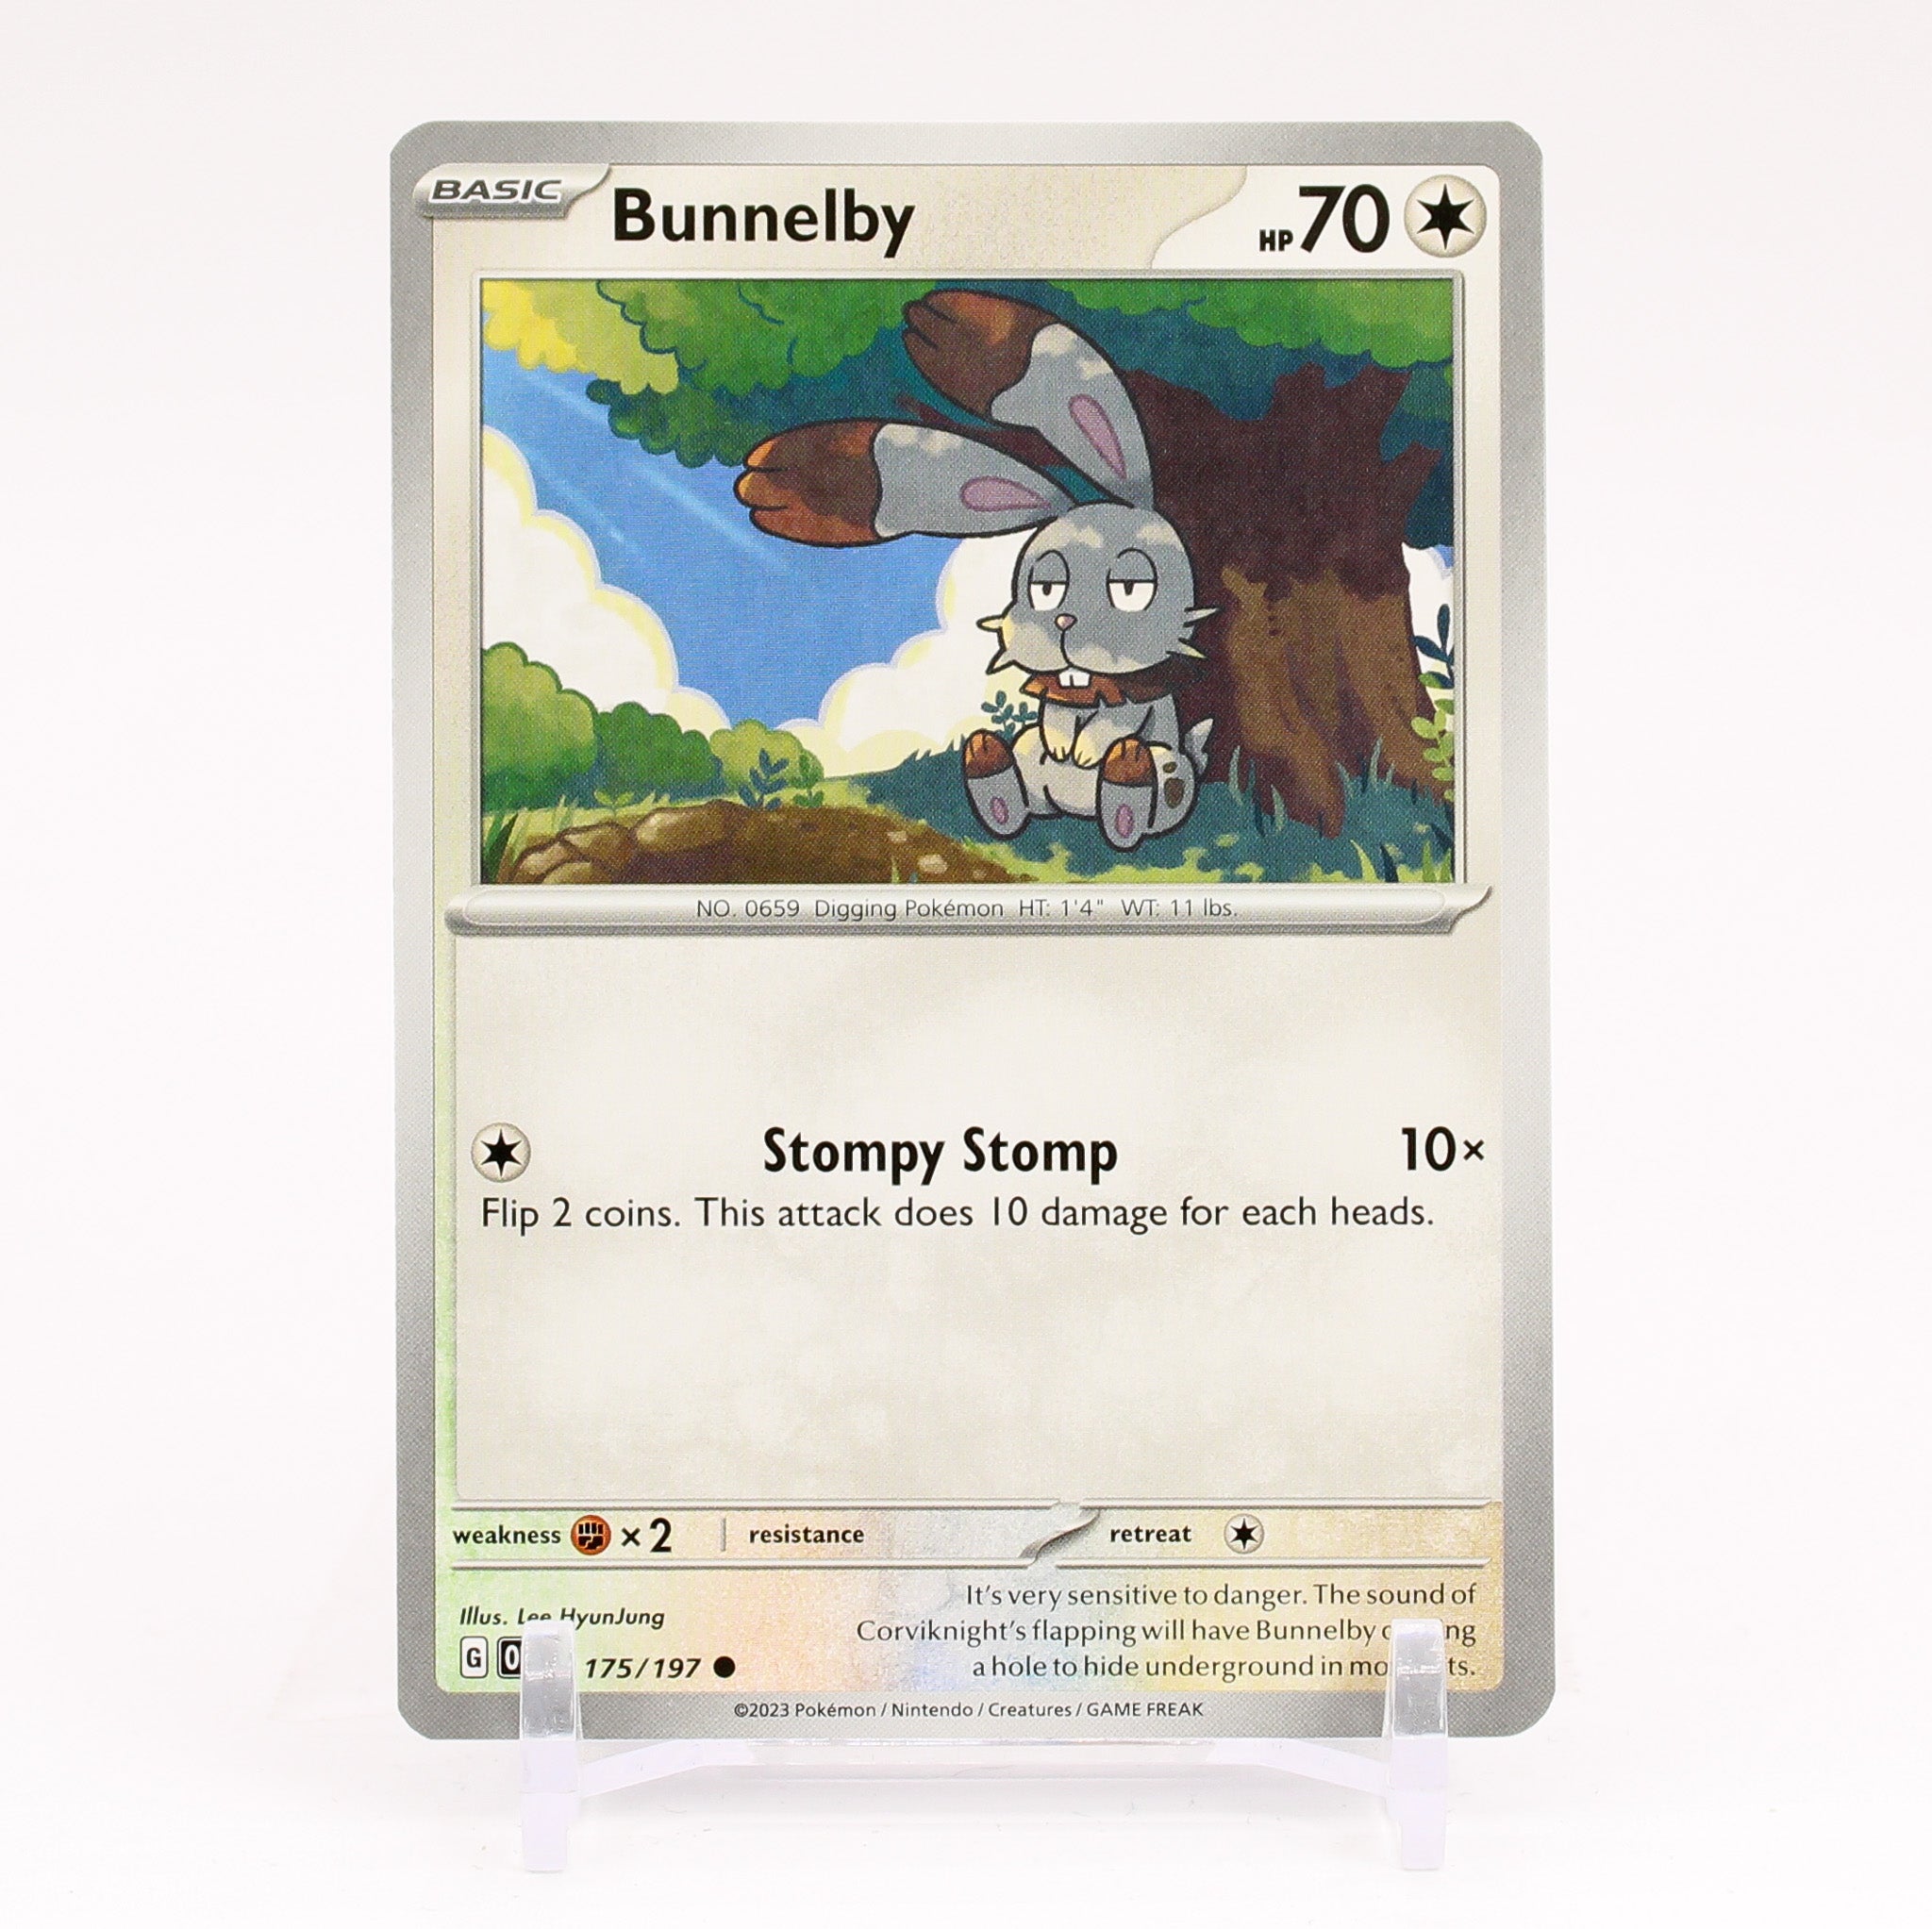 Busca: Bunnelby, Busca de cards, produtos e preços de Pokemon